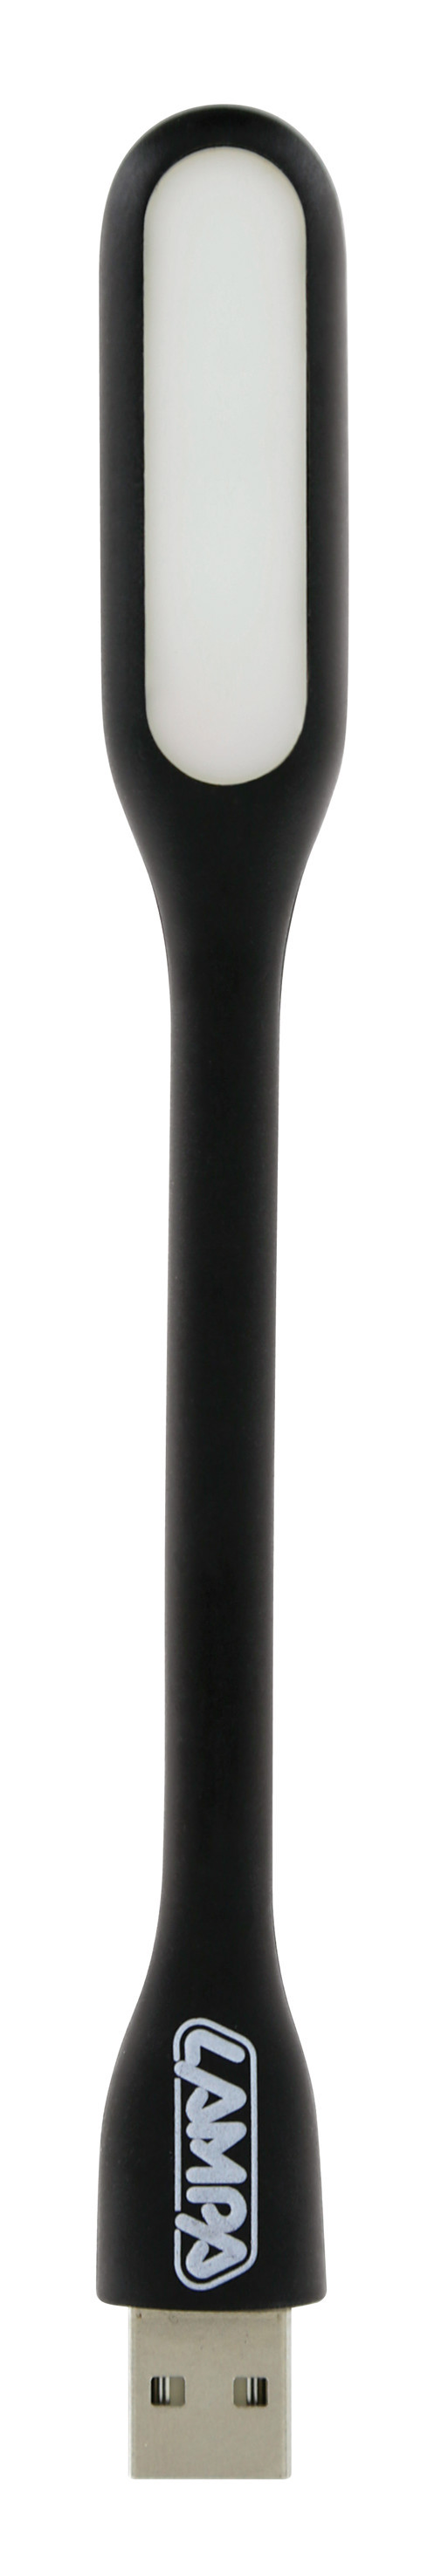 COB LED-es flexibilis Lámpa + USB töltő 12/24V thumb